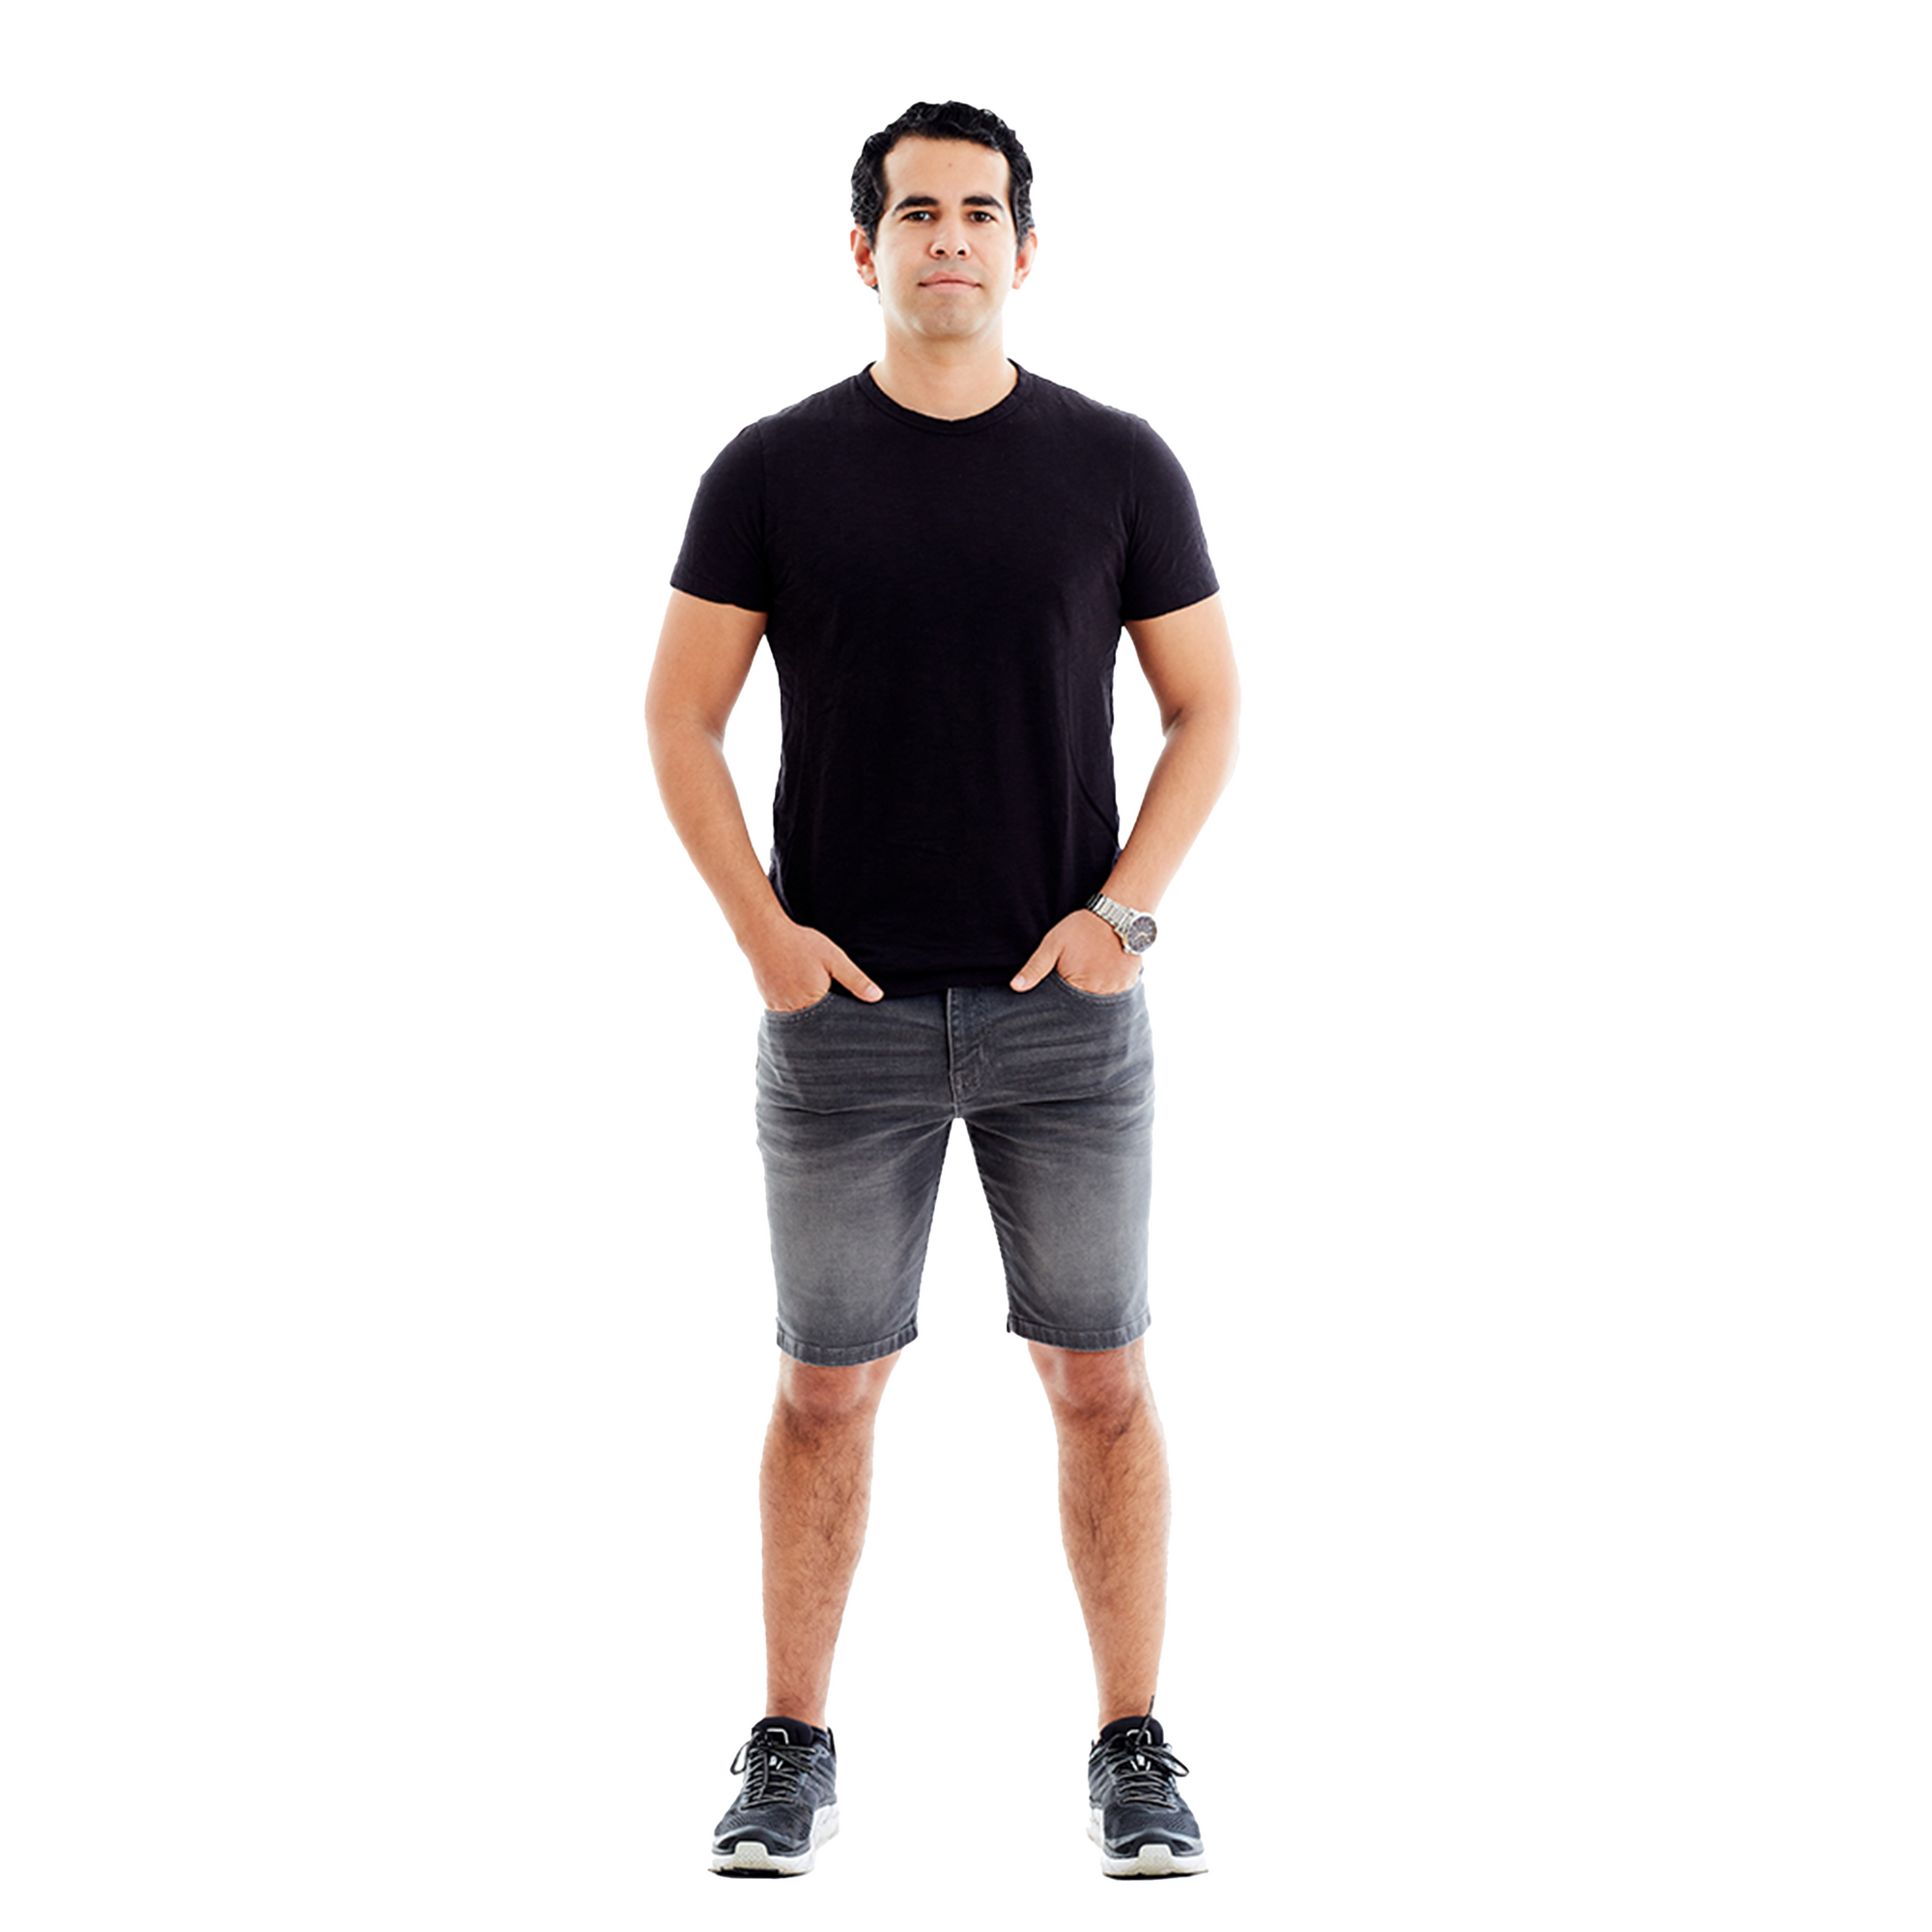 Gym bulge short for Men grey color Size S